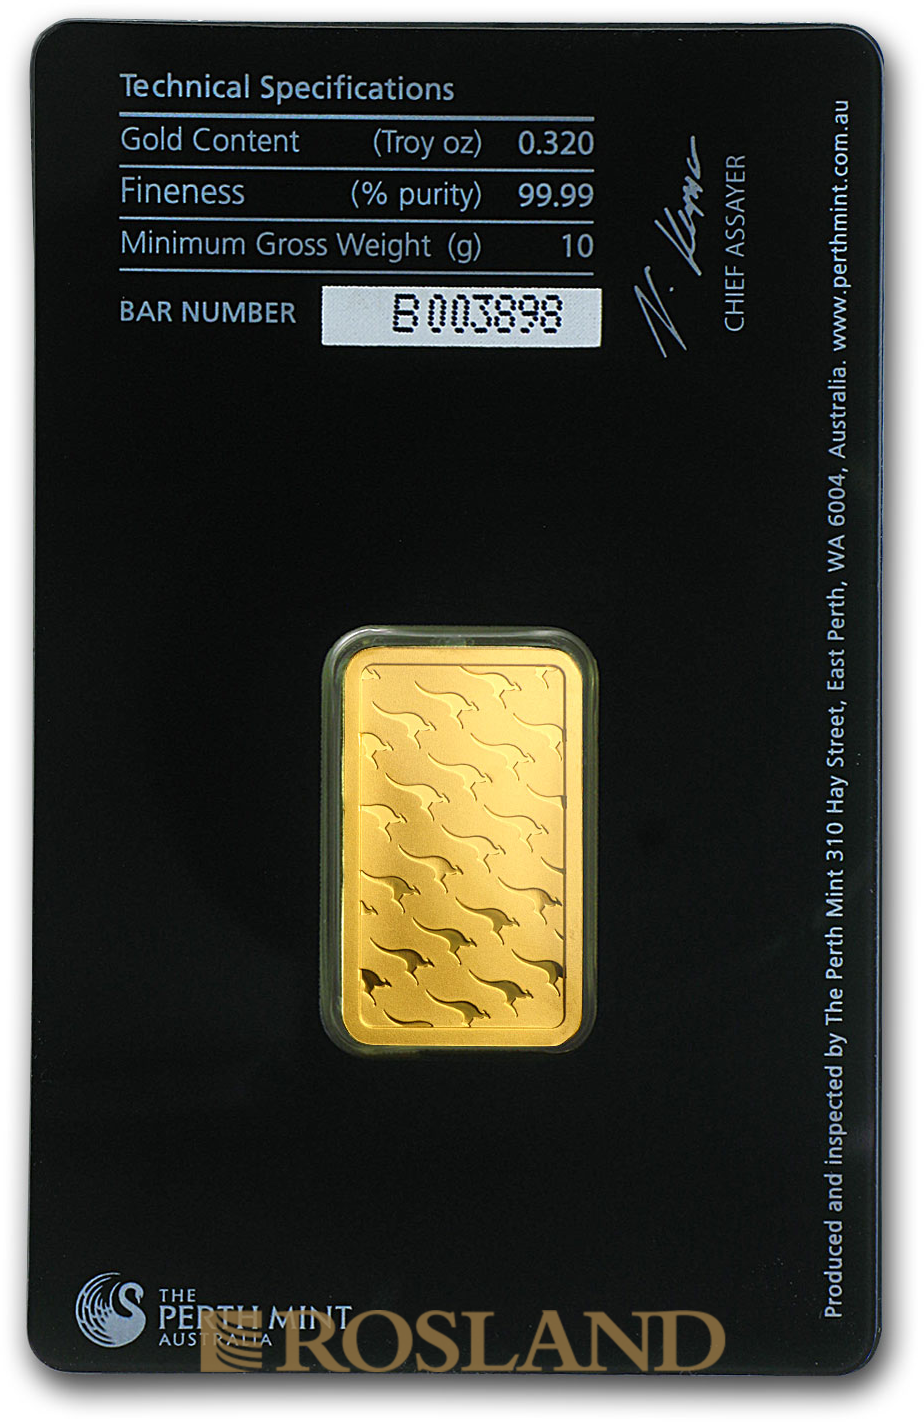 10 Gramm Goldbarren Perth Mint